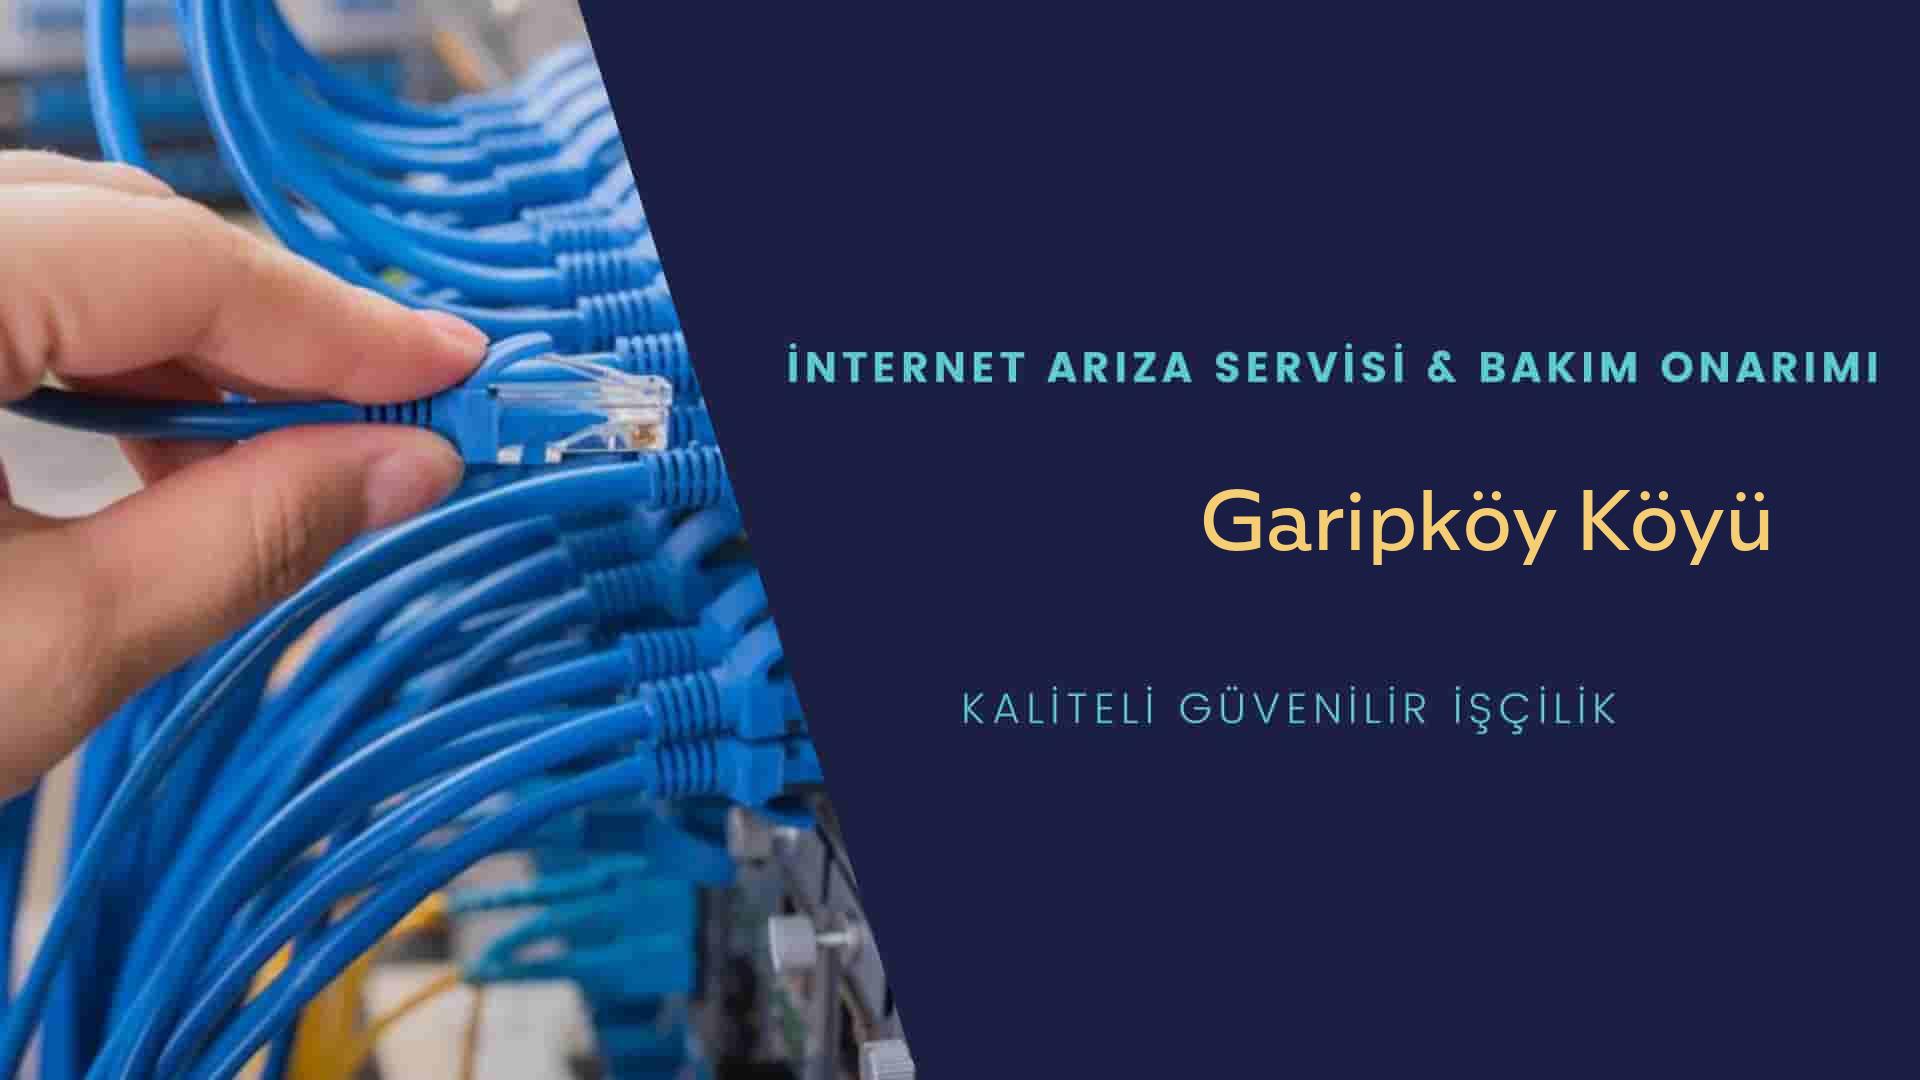 Garipköy Köyü internet kablosu çekimi yapan yerler veya elektrikçiler mi? arıyorsunuz doğru yerdesiniz o zaman sizlere 7/24 yardımcı olacak profesyonel ustalarımız bir telefon kadar yakındır size.